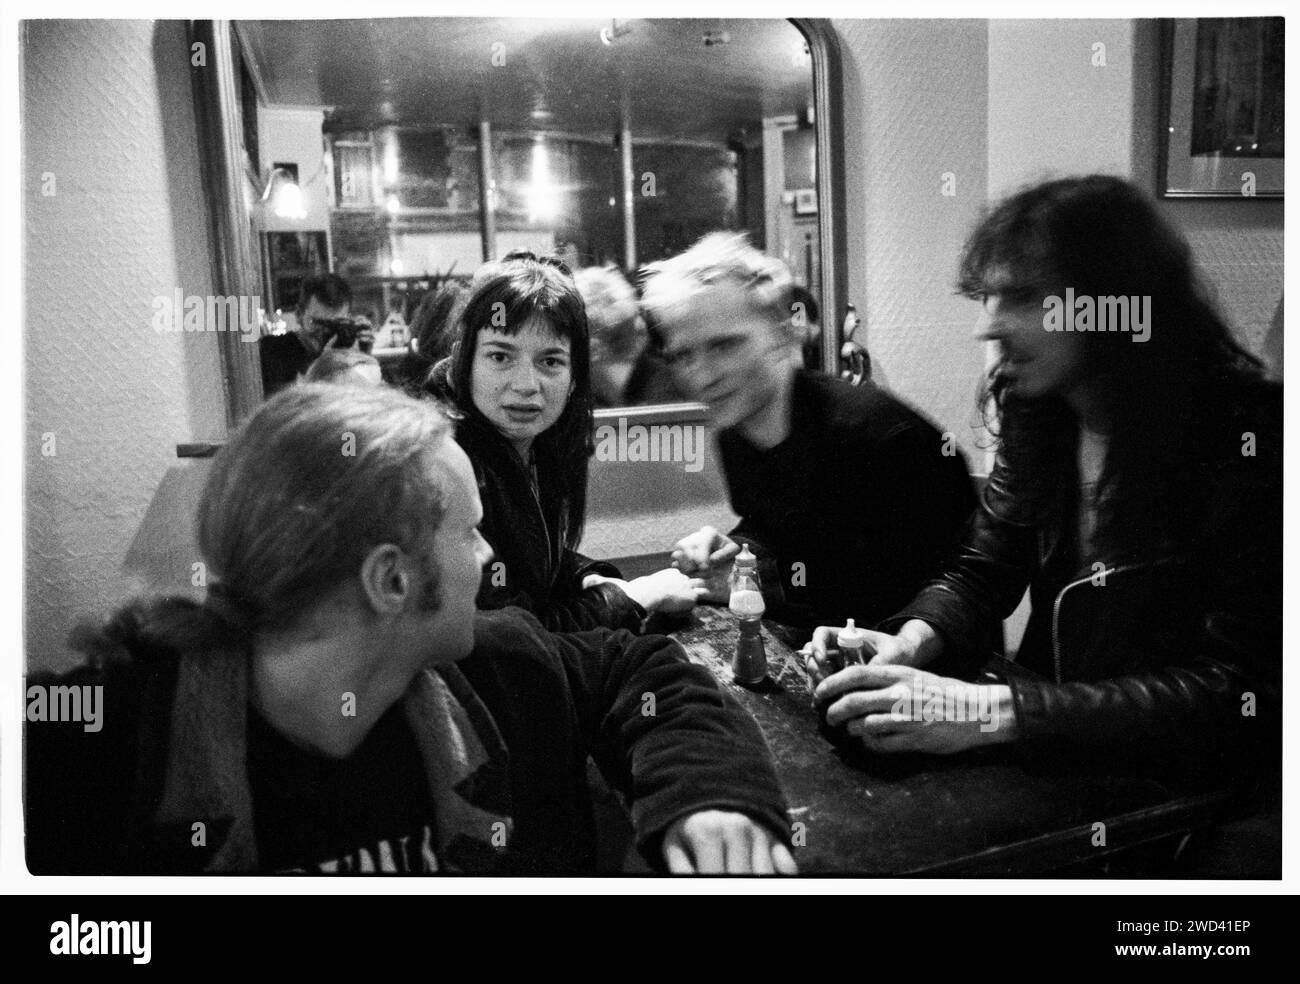 Sara Doran du groupe de rock Blessed Ethel photographiée dans un café de Cardiff, pays de Galles, le 1 avril 1994. Photo : Rob Watkins. INFO : Bienheureux Ethel, un groupe de rock alternatif anglais actif dans les années 90, a combiné des éléments d'indie, de psychédélie et de grunge. Leur son dynamique et leurs albums comme 'Rat' produits par John Robb capturent l'esprit de l'époque. Banque D'Images